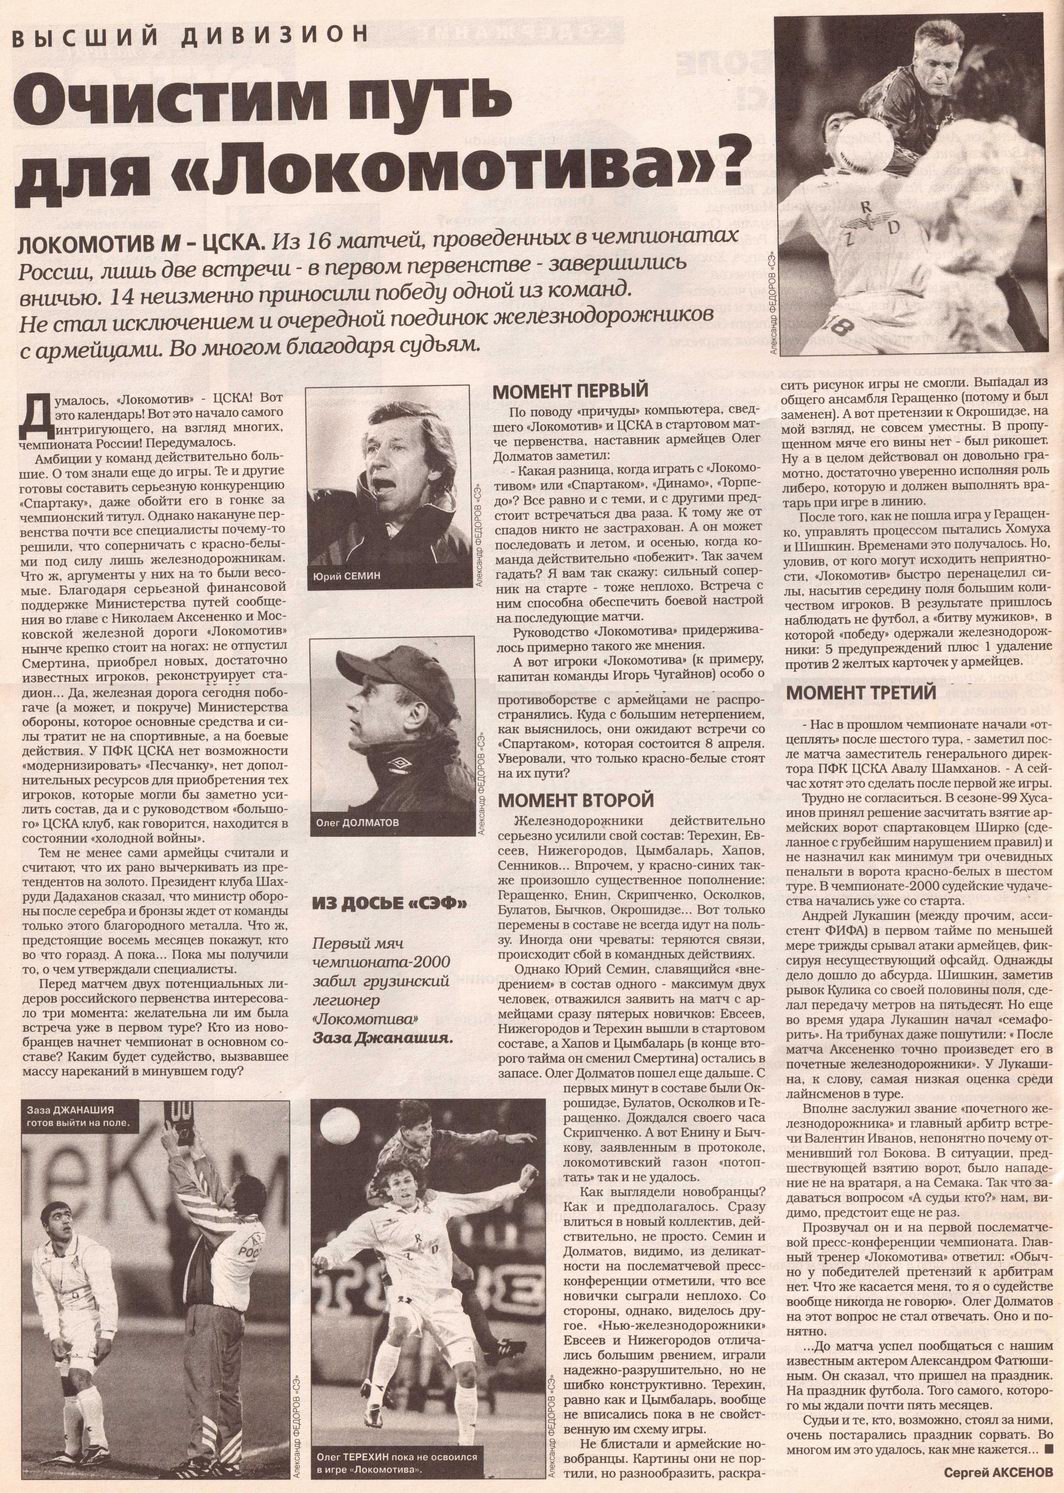 2000-03-24.LokomotivM-CSKA.1